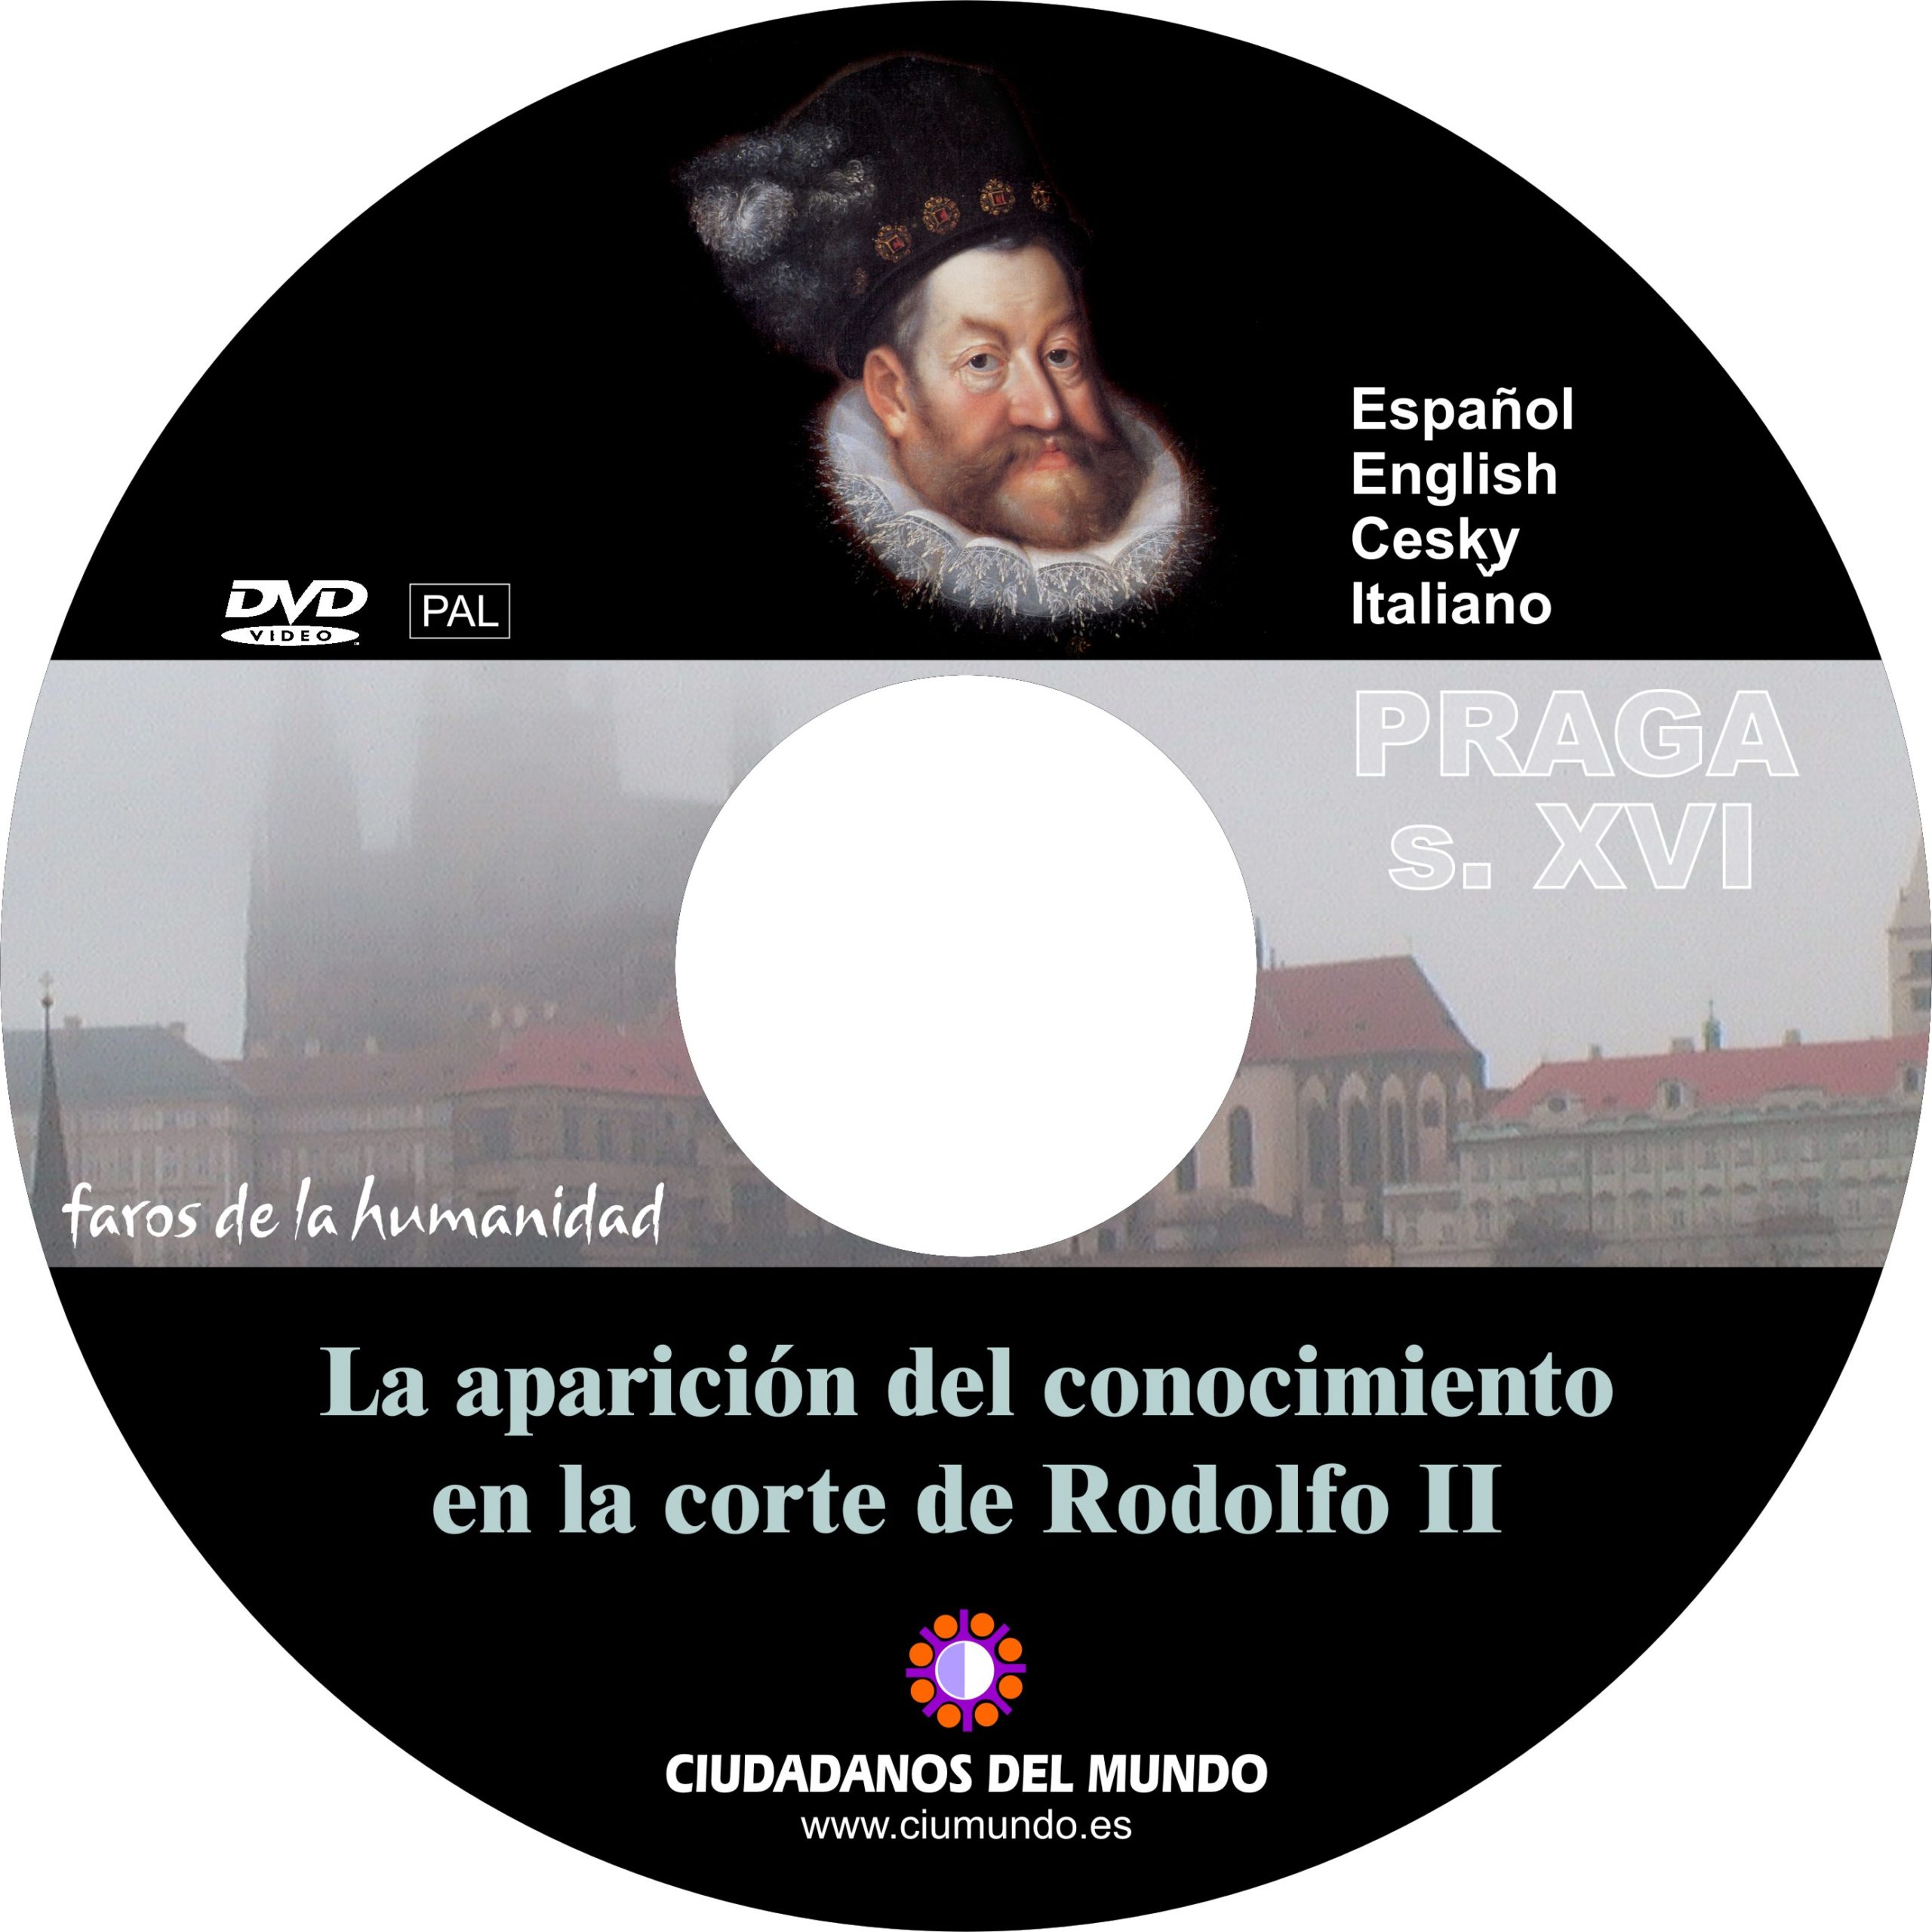 DVD “La aparición del conocimiento en la corte de Rodolfo II”